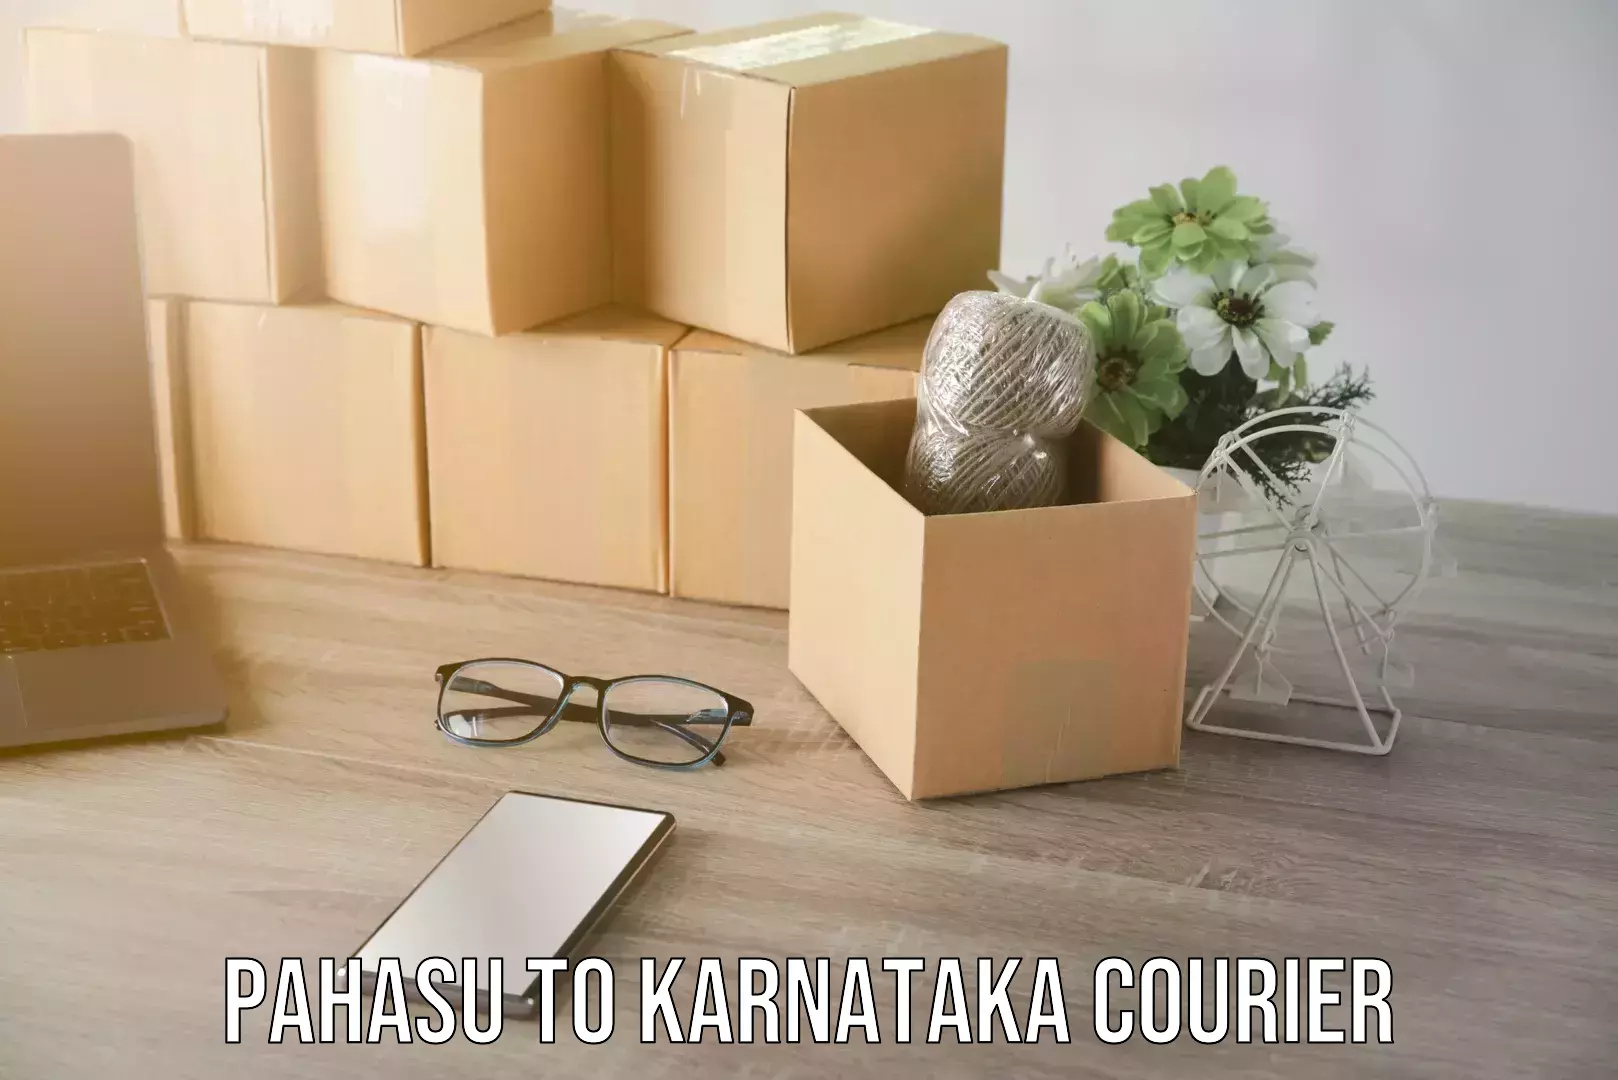 Reliable movers Pahasu to Karnataka